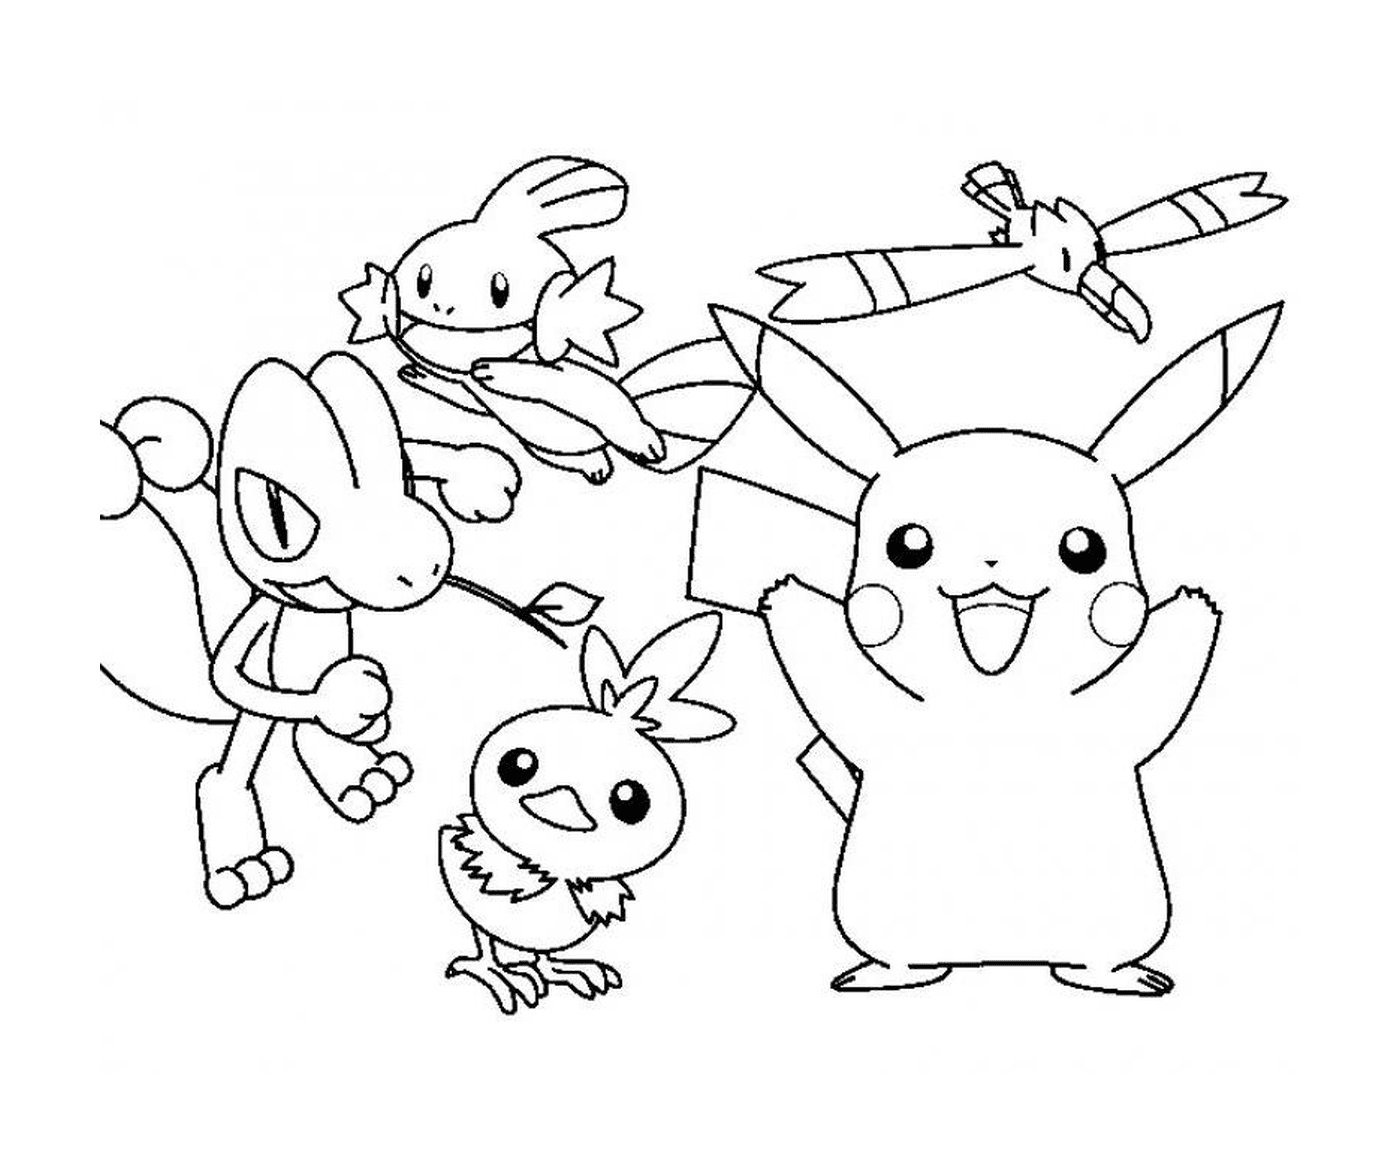  Un gruppo di Pokémon in azione 